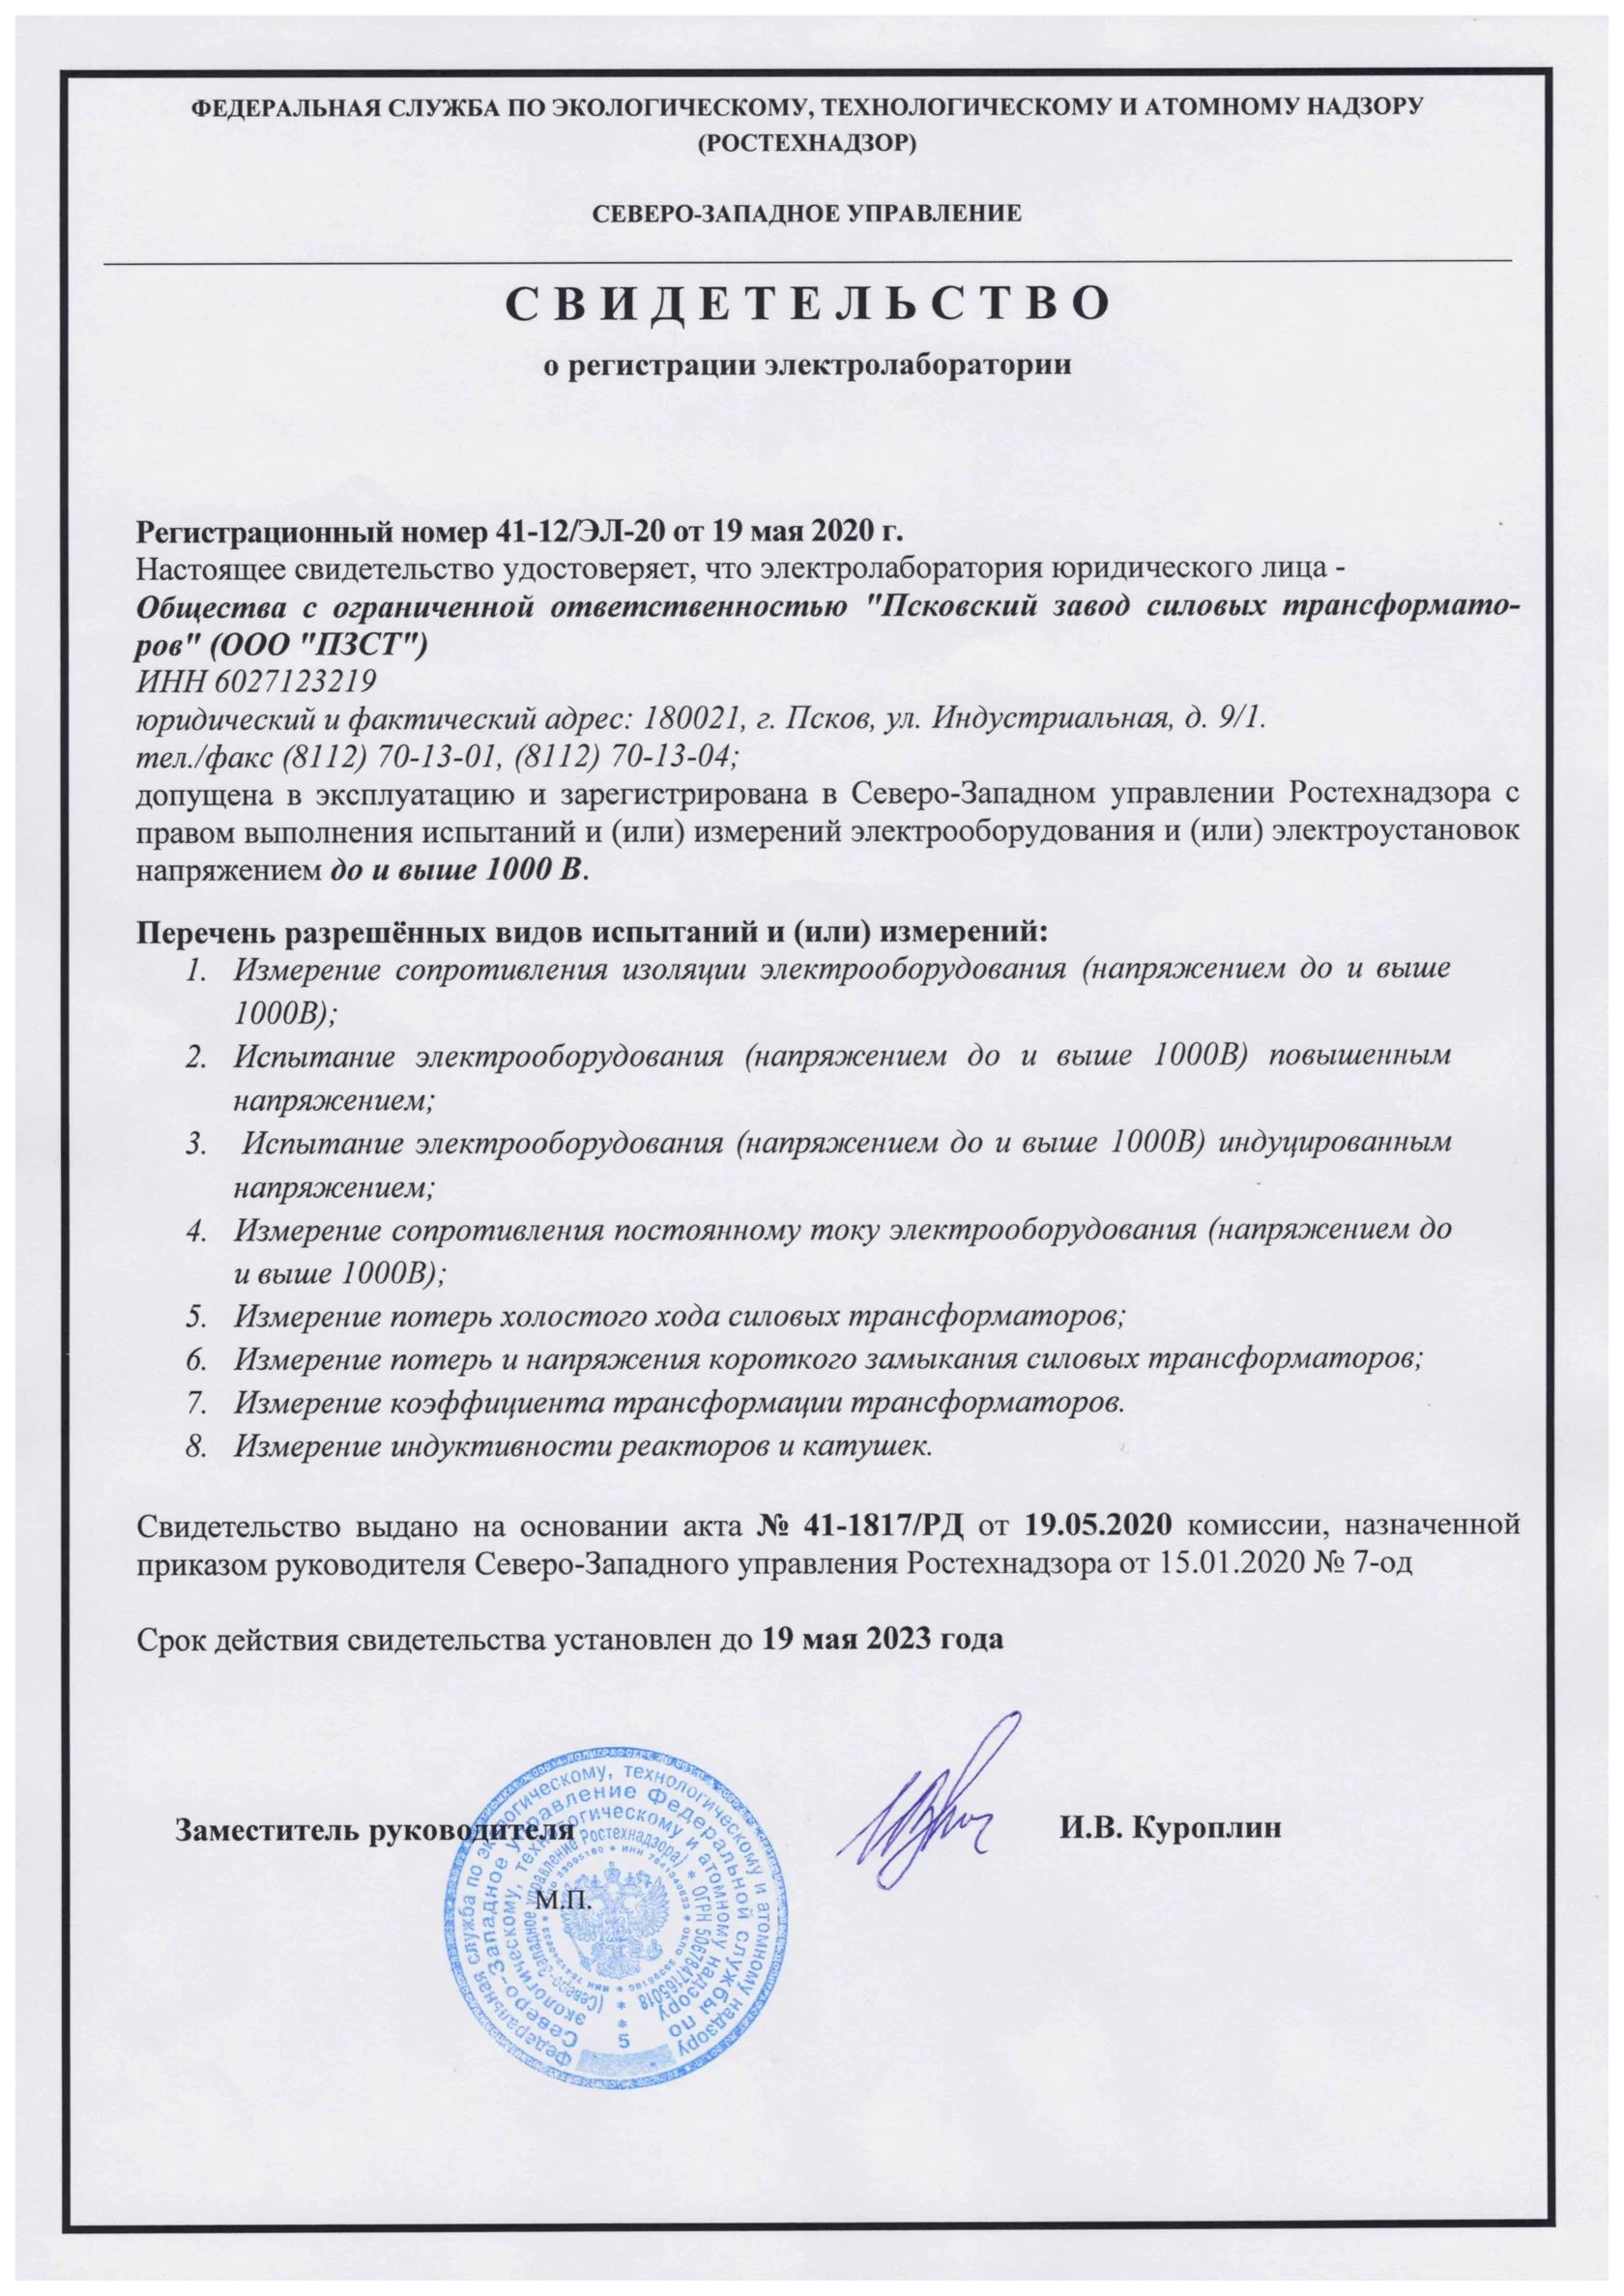 Наше предприятие прошло регистрацию электролаборатории в Ростехнадзоре